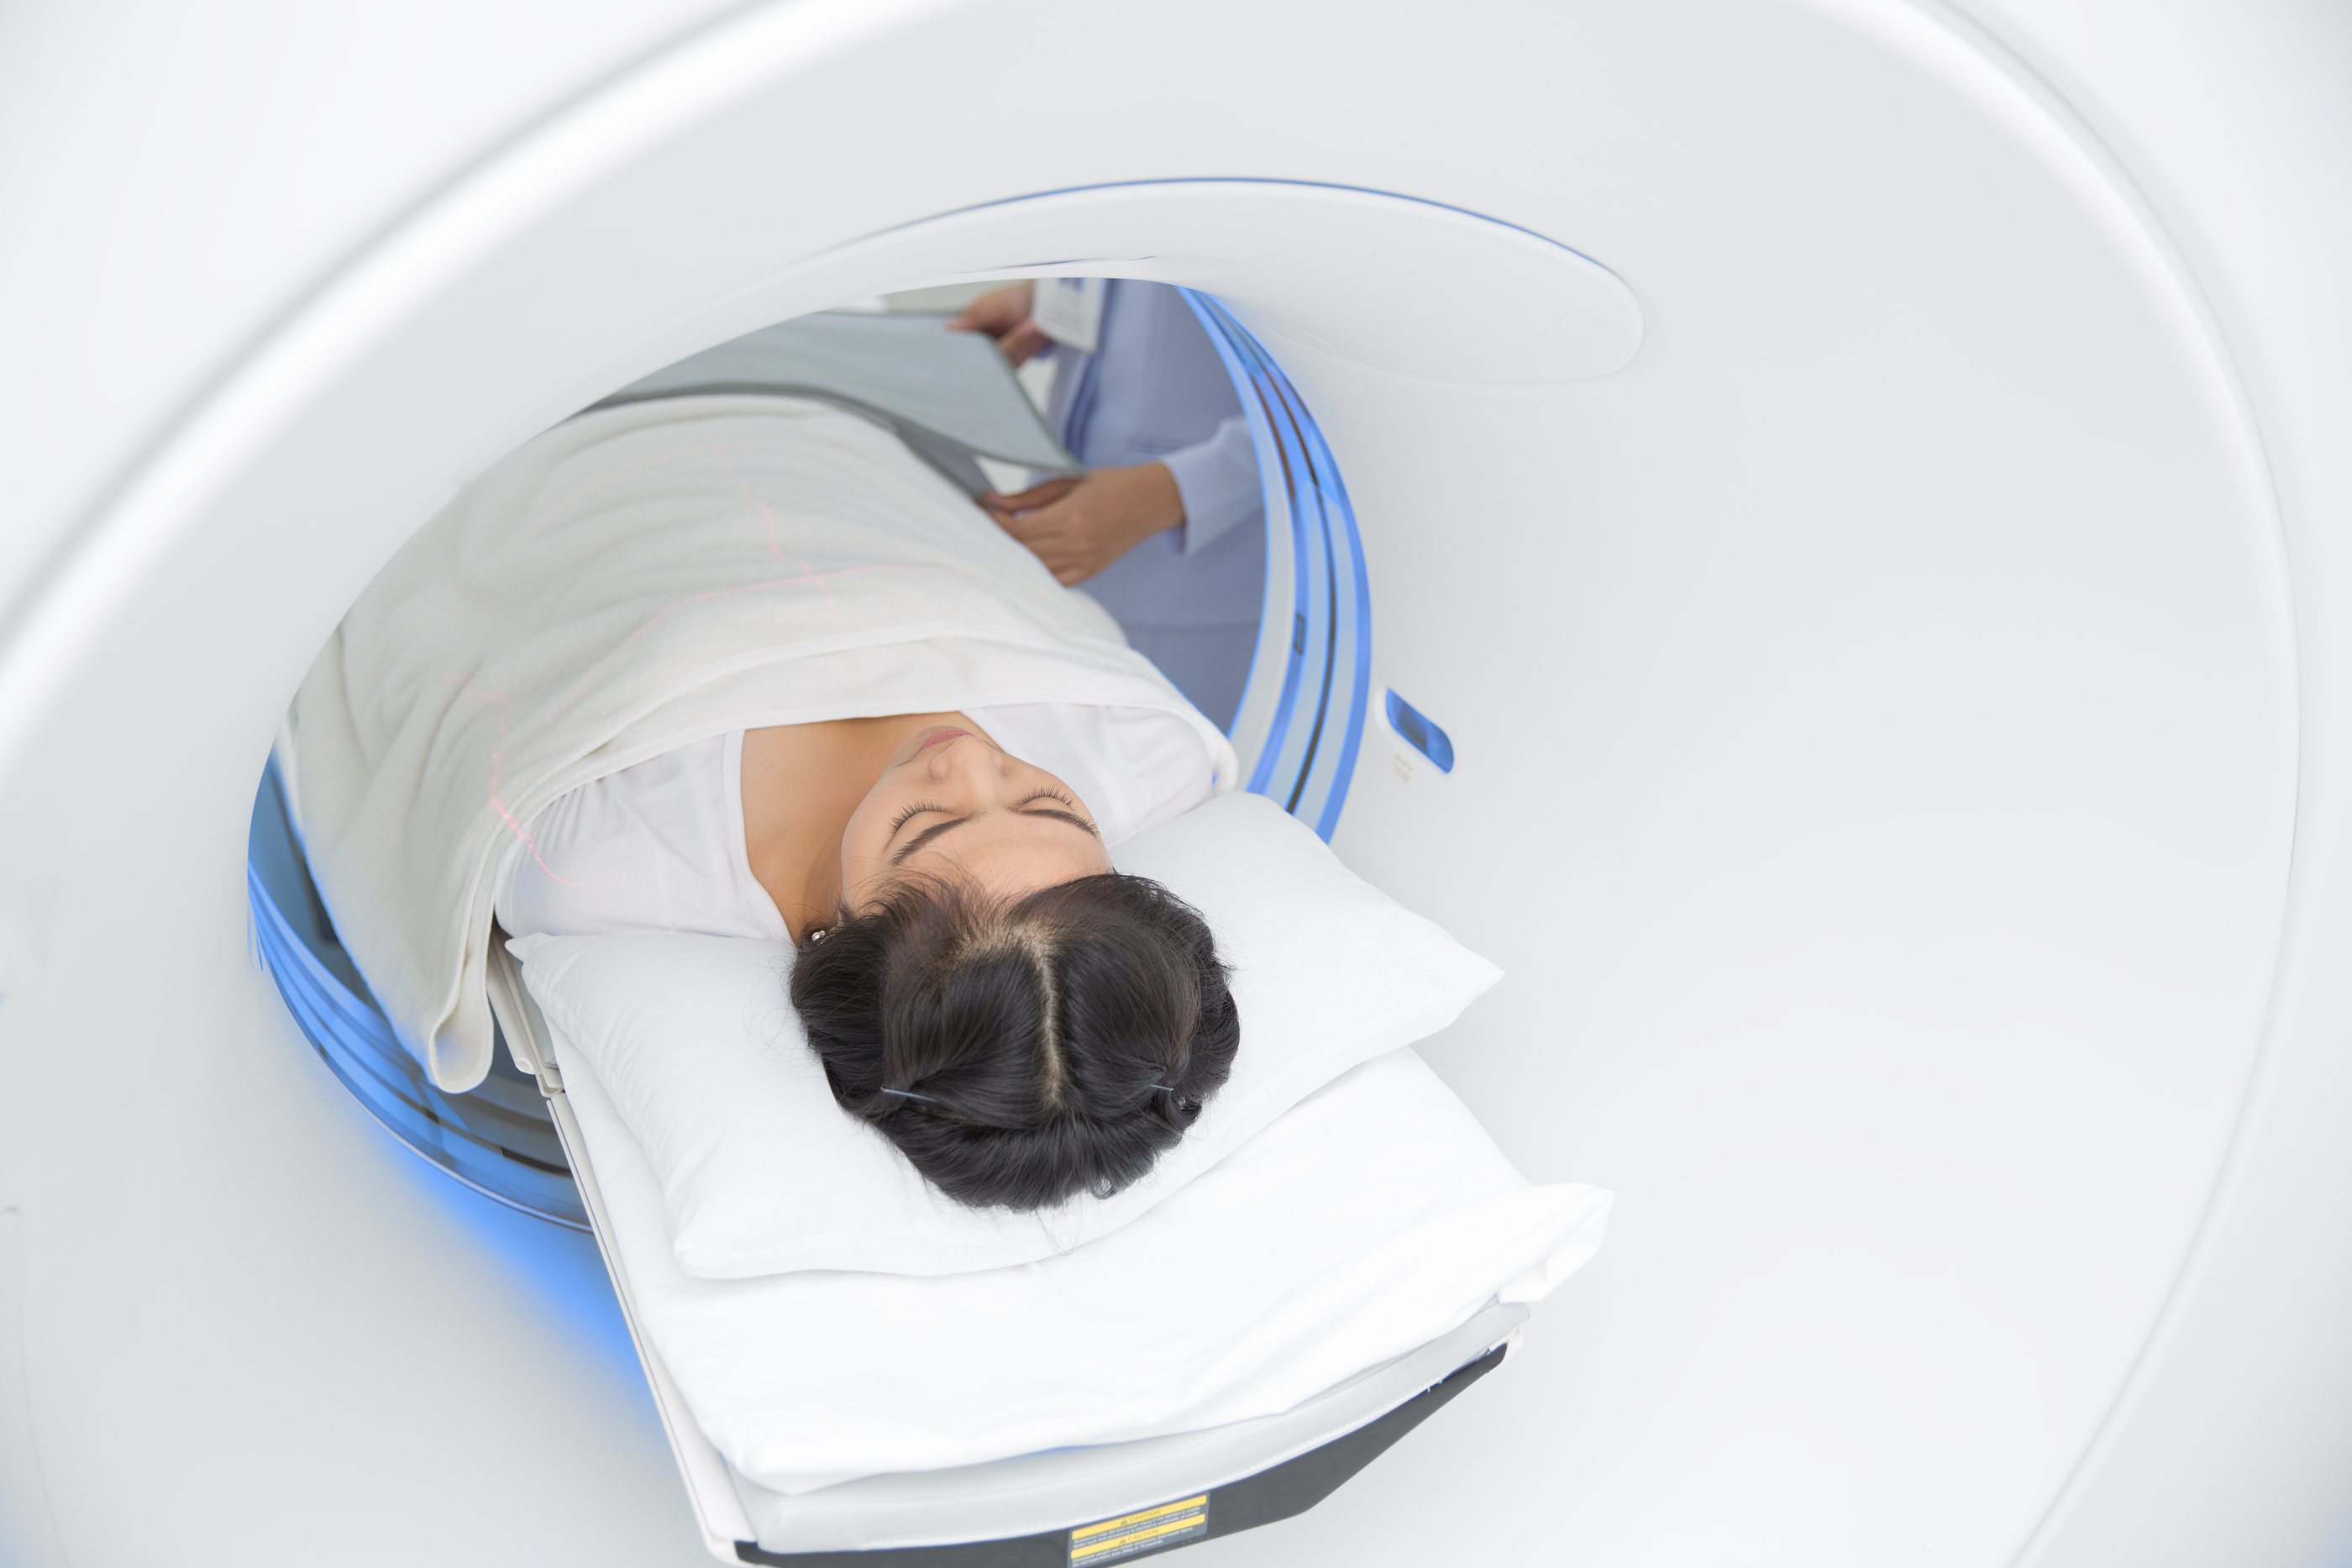 Girl during MRI scan process